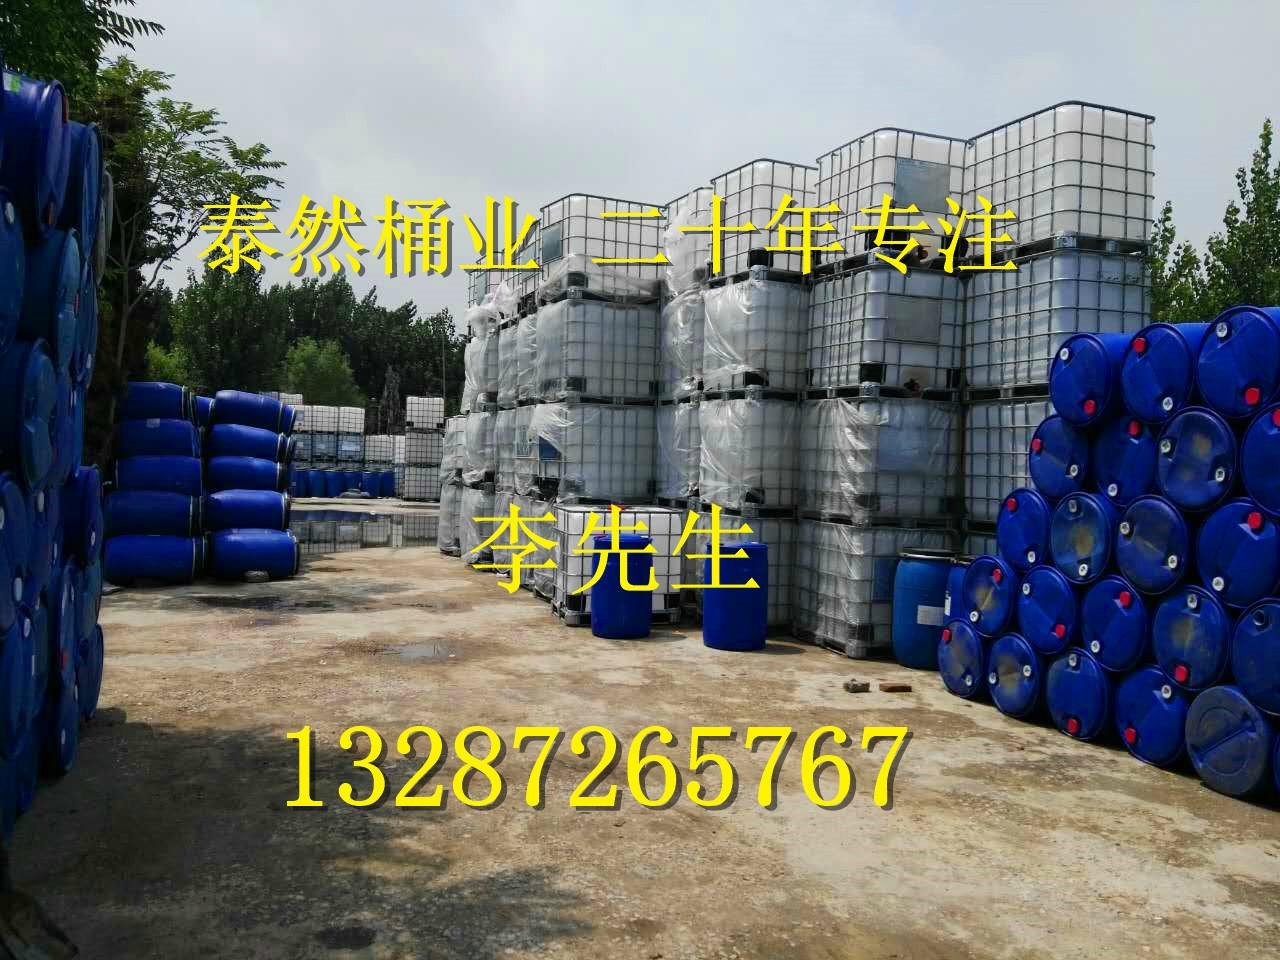 200L塑料桶|出口級塑料桶|塑料桶包裝桶皮重8-10.5kg|純料生產 2